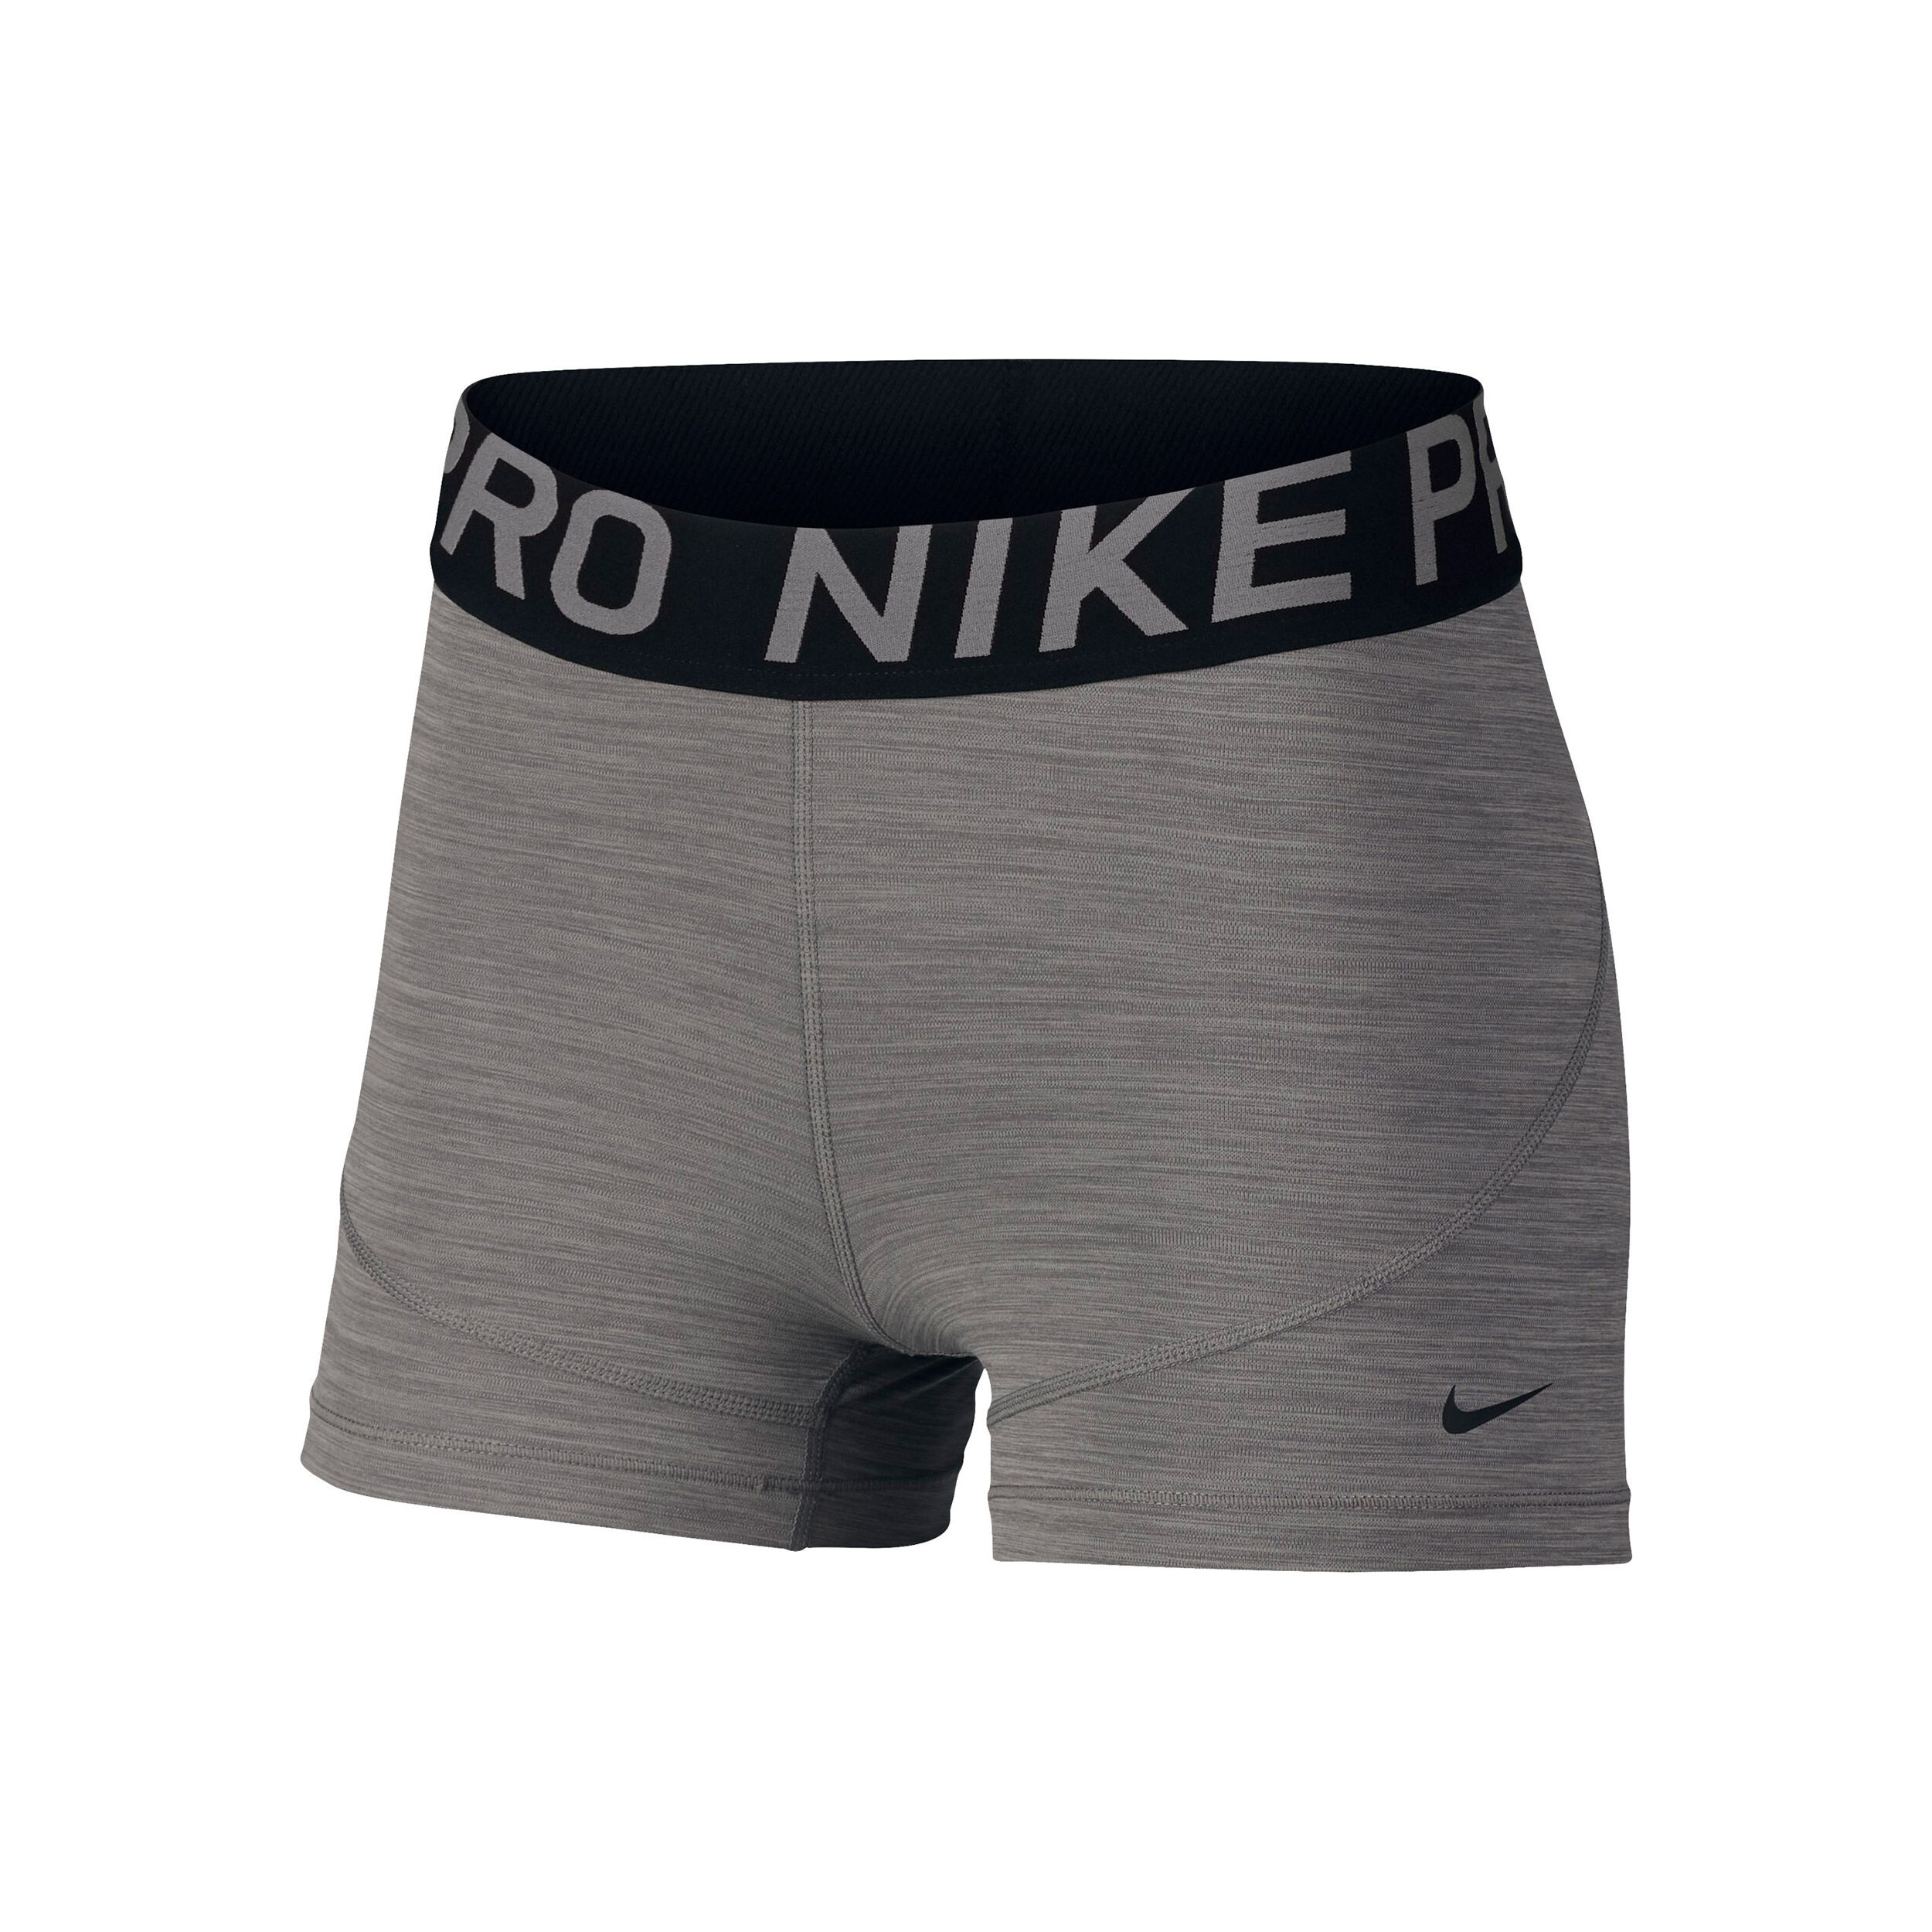 Nike Pro Tight Damen - Grau, Schwarz 